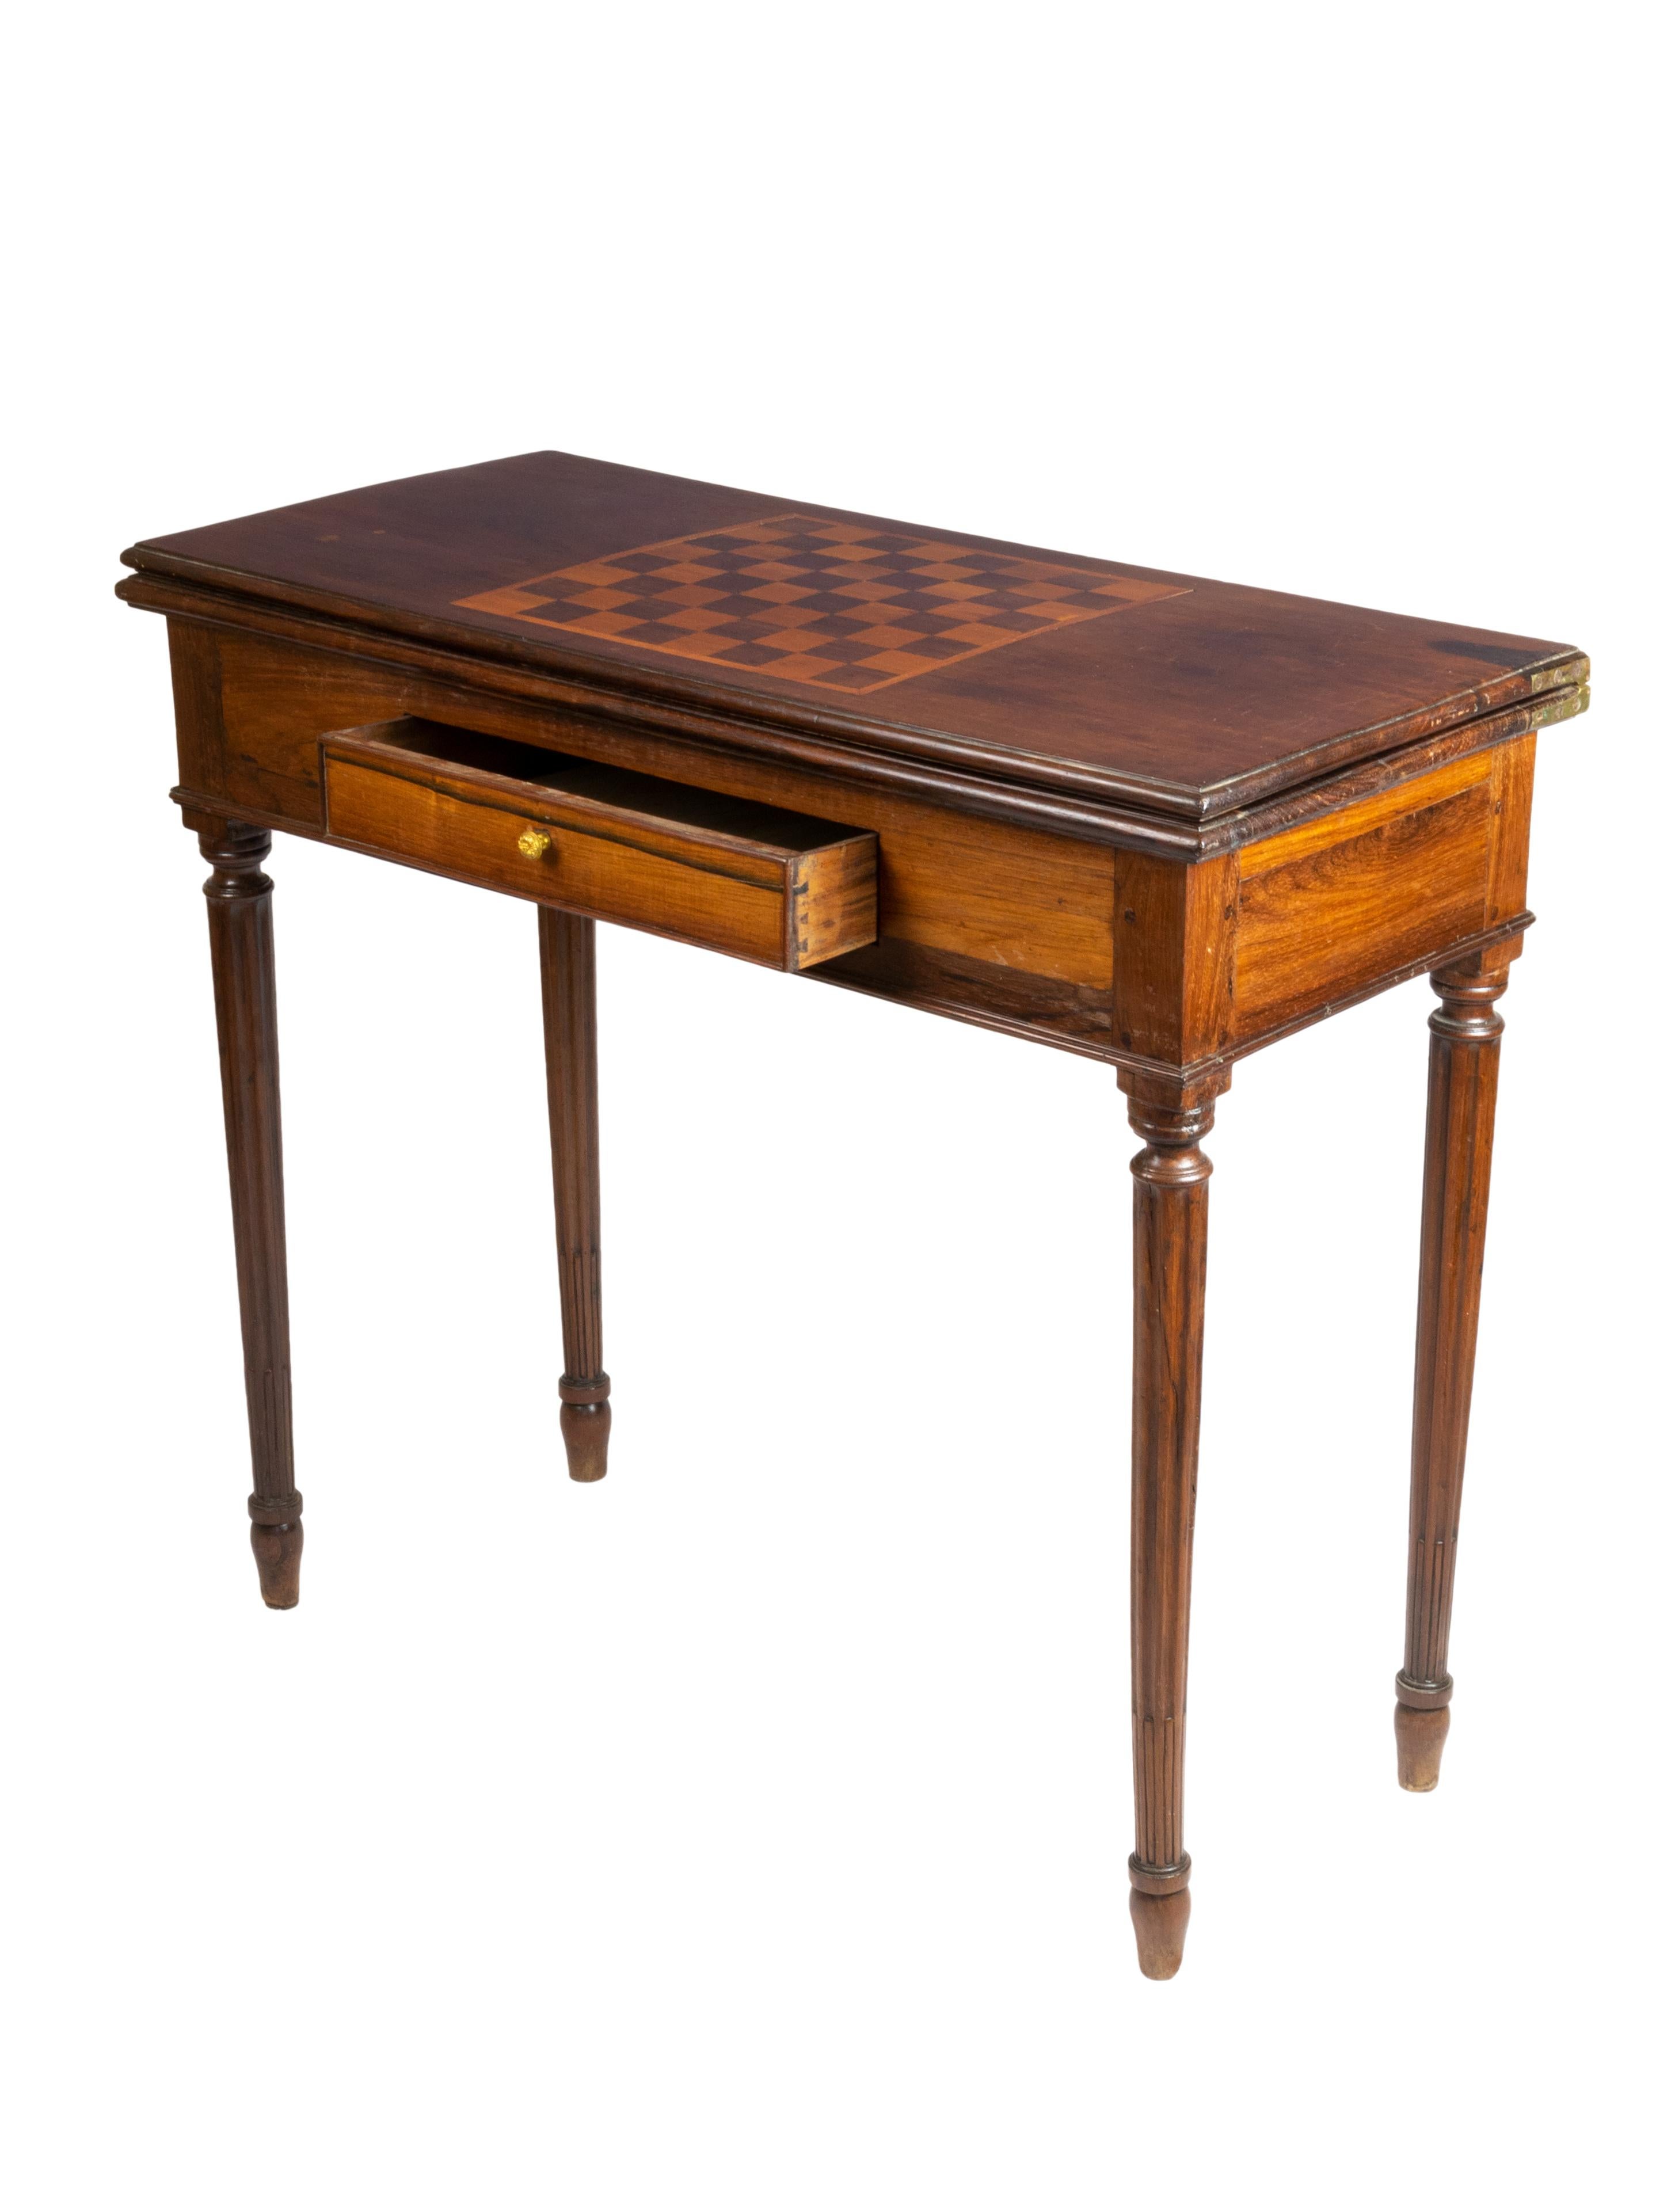 Une très belle table à cartes d'époque George III en excellent état d'origine. Un pied s'ouvre pour accueillir la surface de jeu avec un feutre vert, un échiquier en marqueterie et un tiroir central.

Hauteur 80 cm
Ouvert 91 x 83,5 cm
Fermé : 91 x